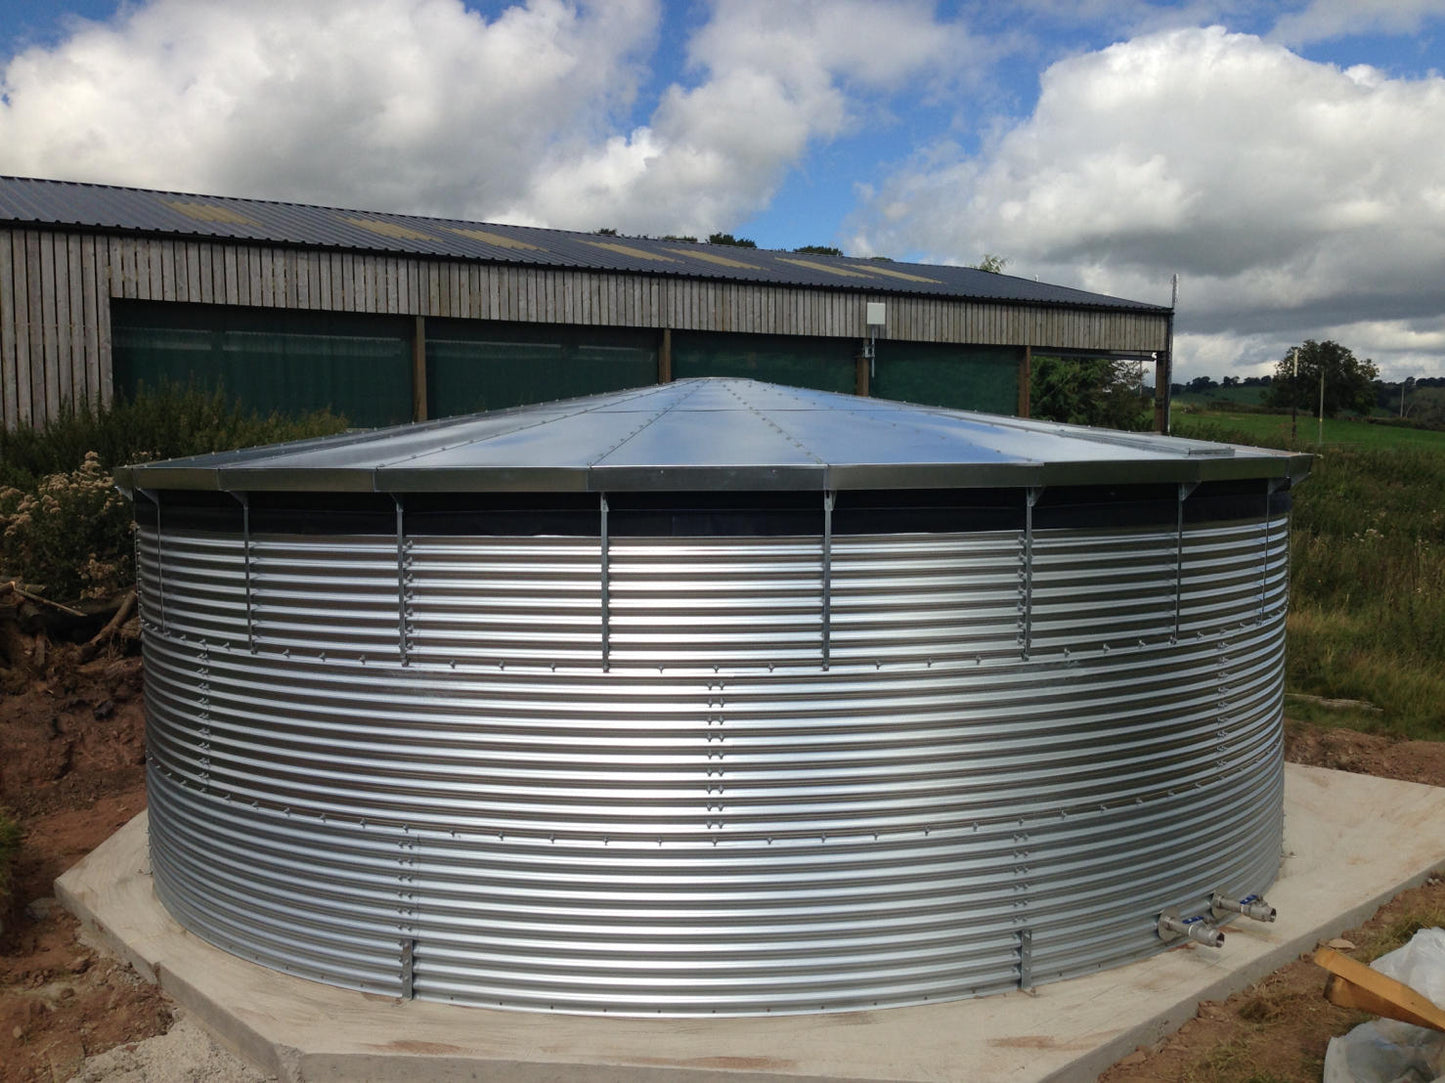 64,000 litre Galvanised Steel Water Tank